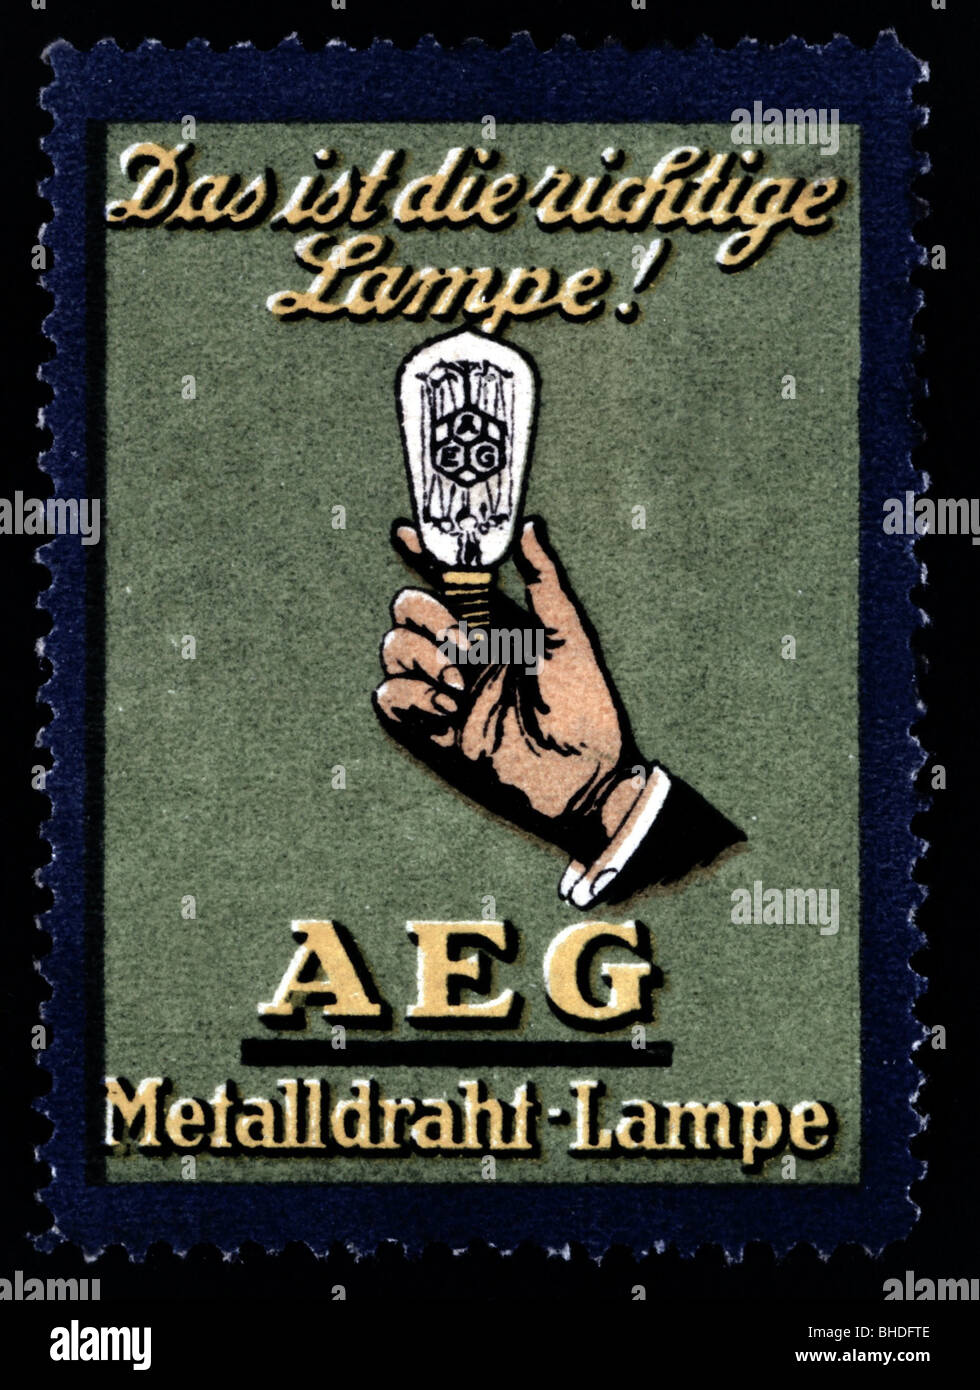 pubblicita-energia-elettricita-lampade-lampade-a-filamento-metallico-aeg-francobollo-circa-1910-bhdfte